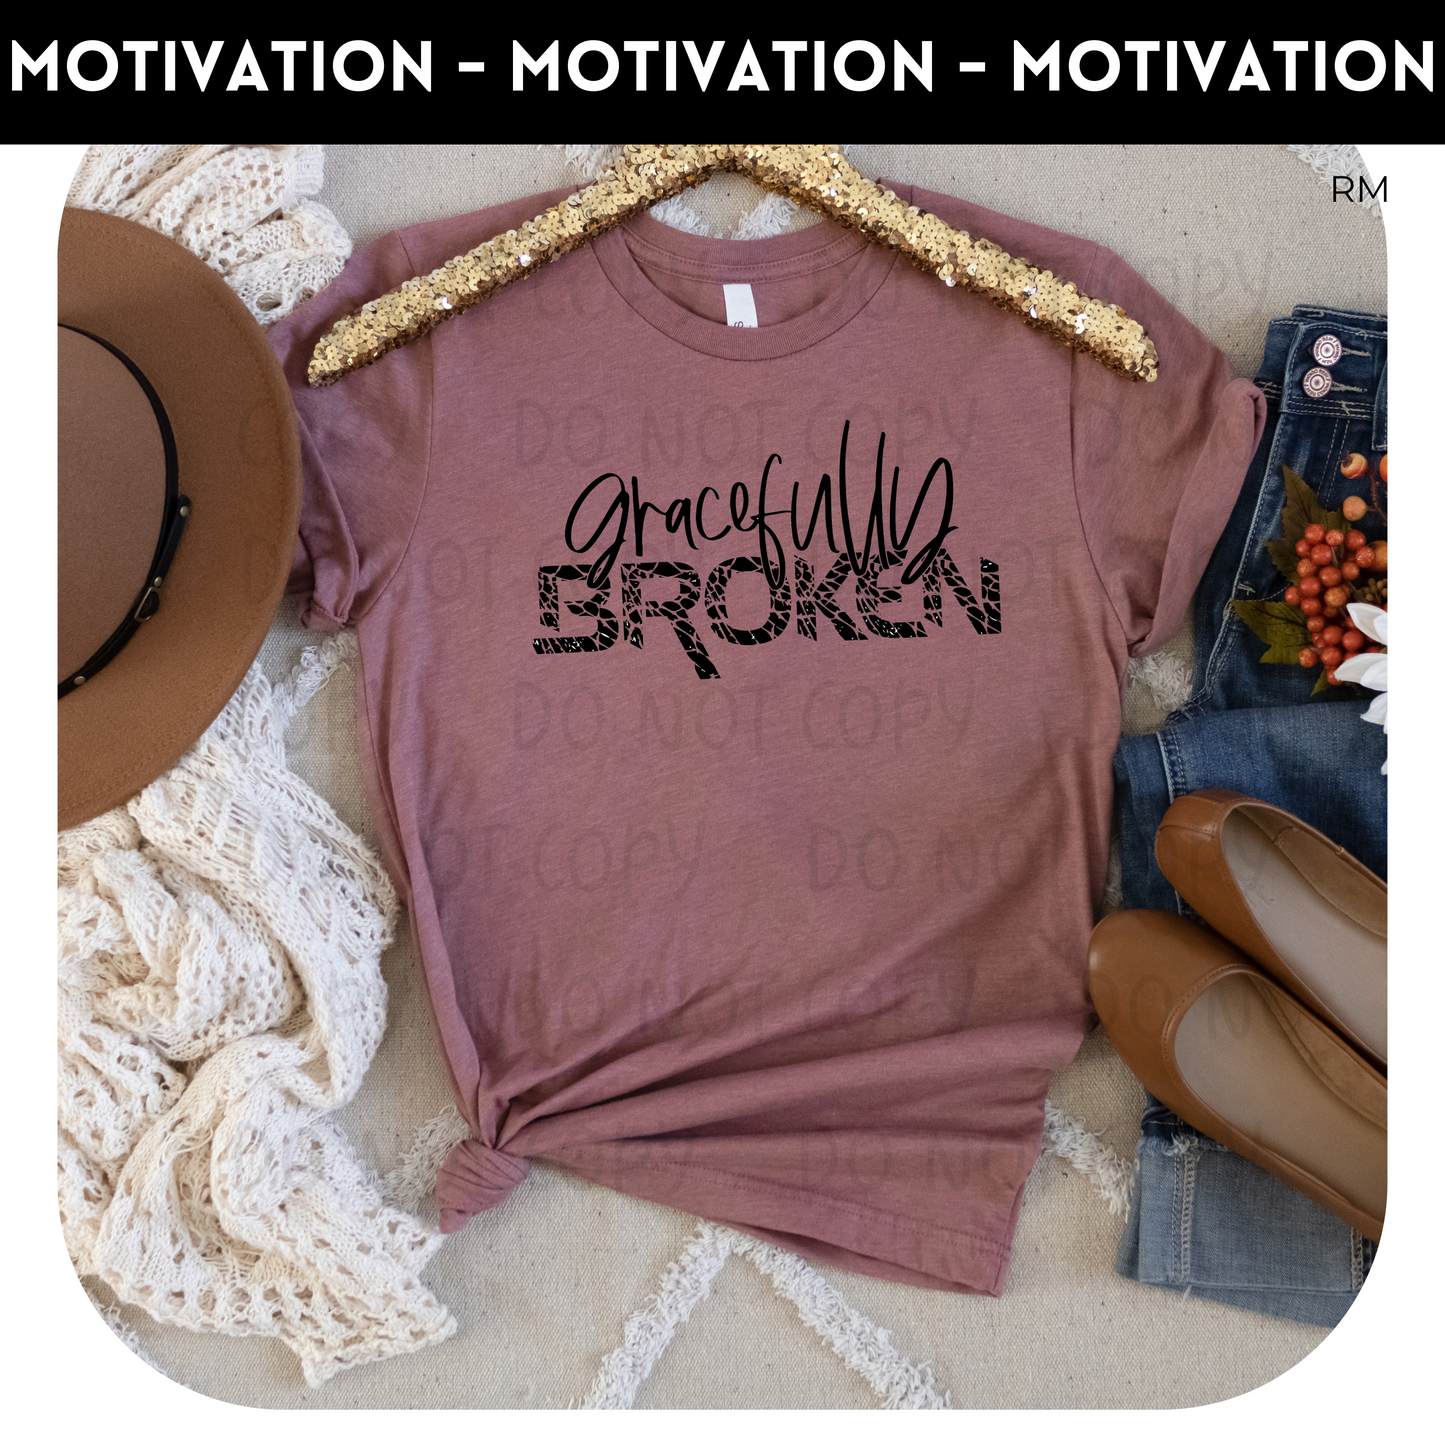 Gracefully Broken Adult Shirt-Inspirational 108